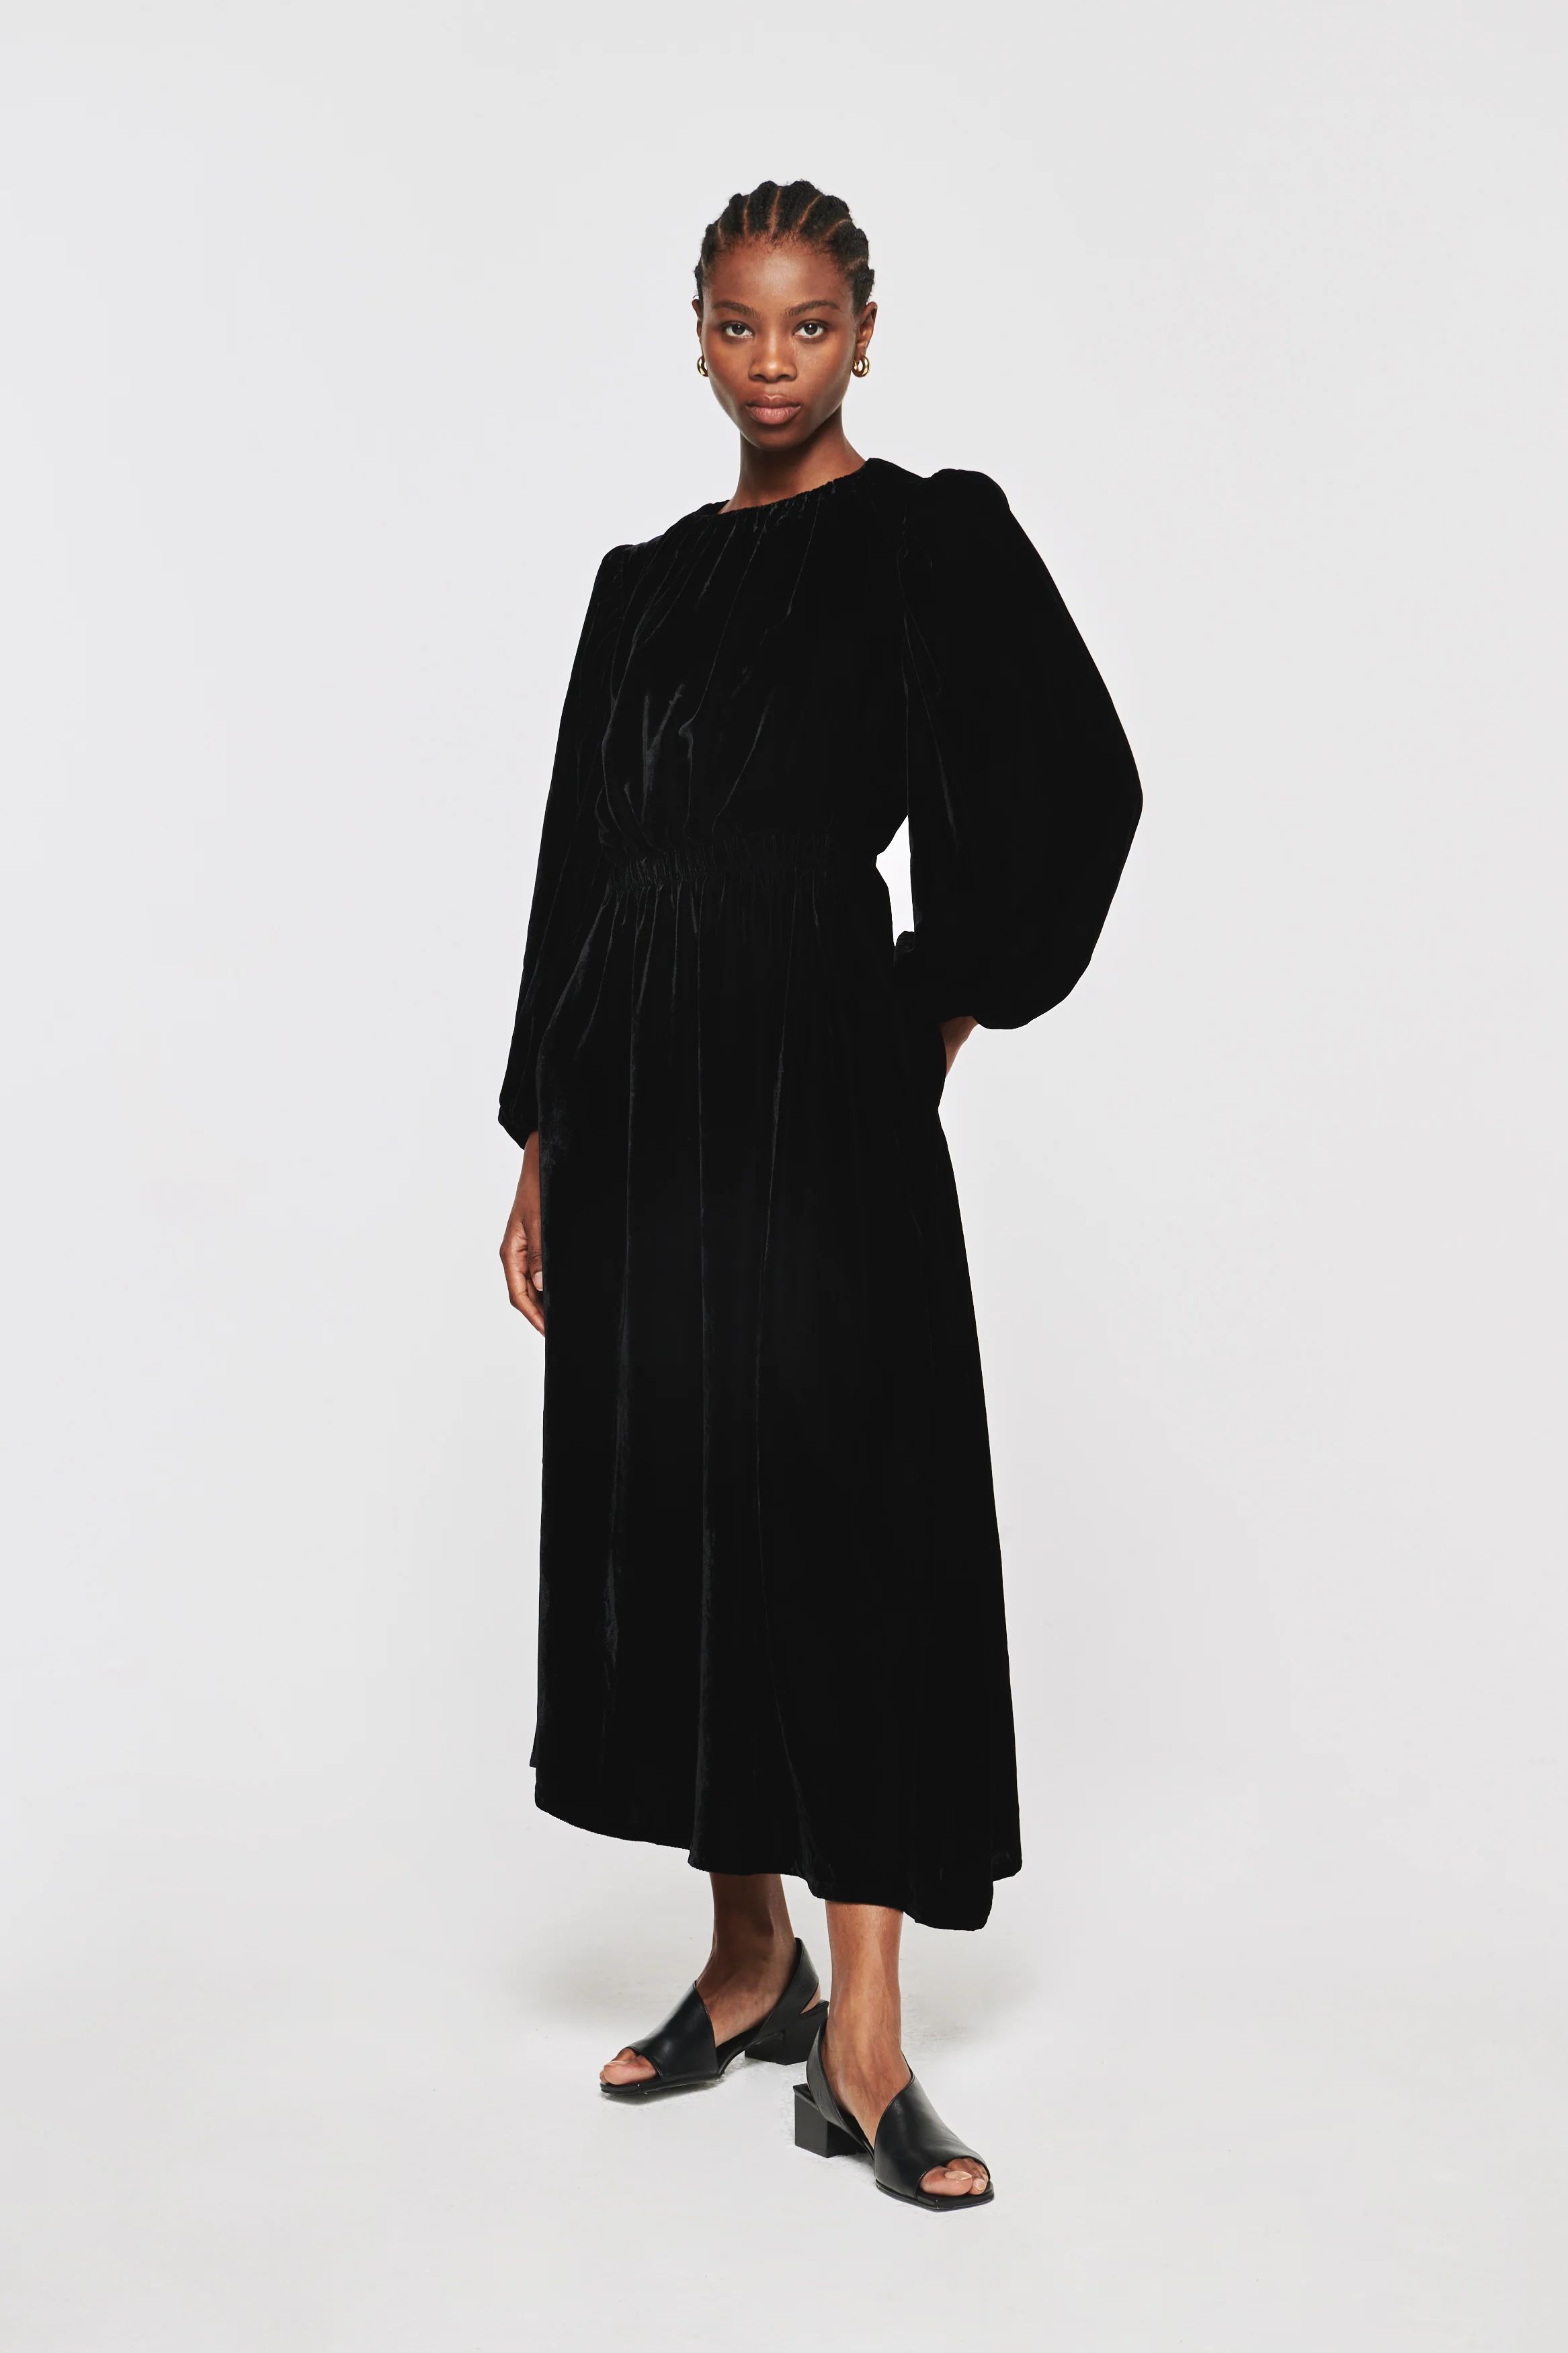 Lucca | Velvet Dress in Black | ALIGNE | Aligne UK